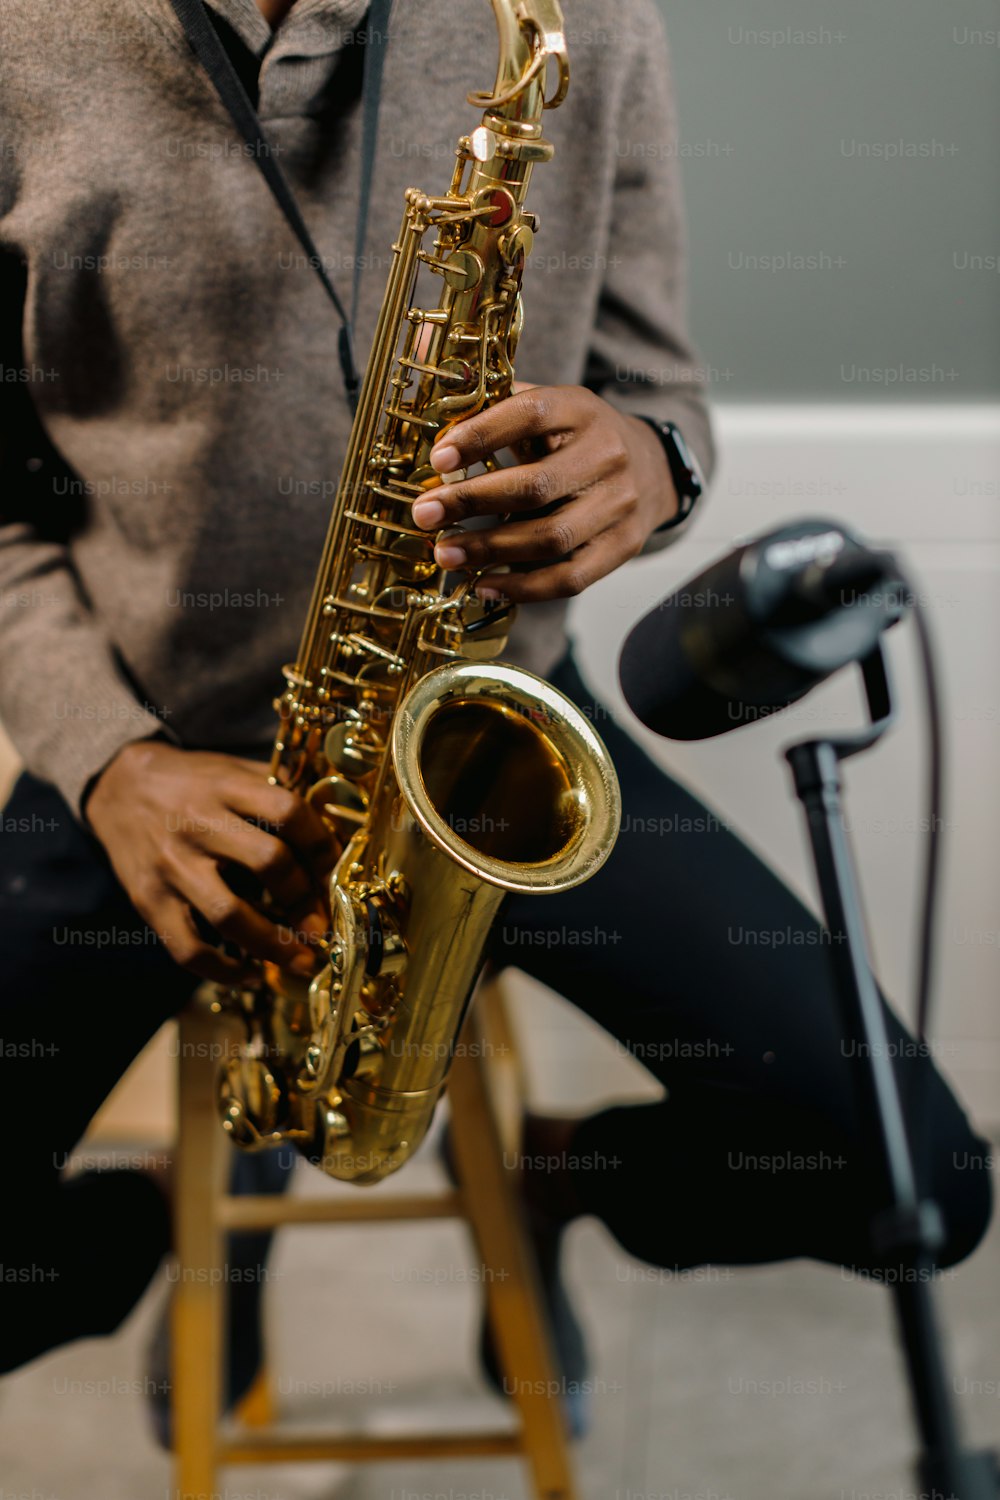 Un homme assis sur un tabouret tenant un saxophone